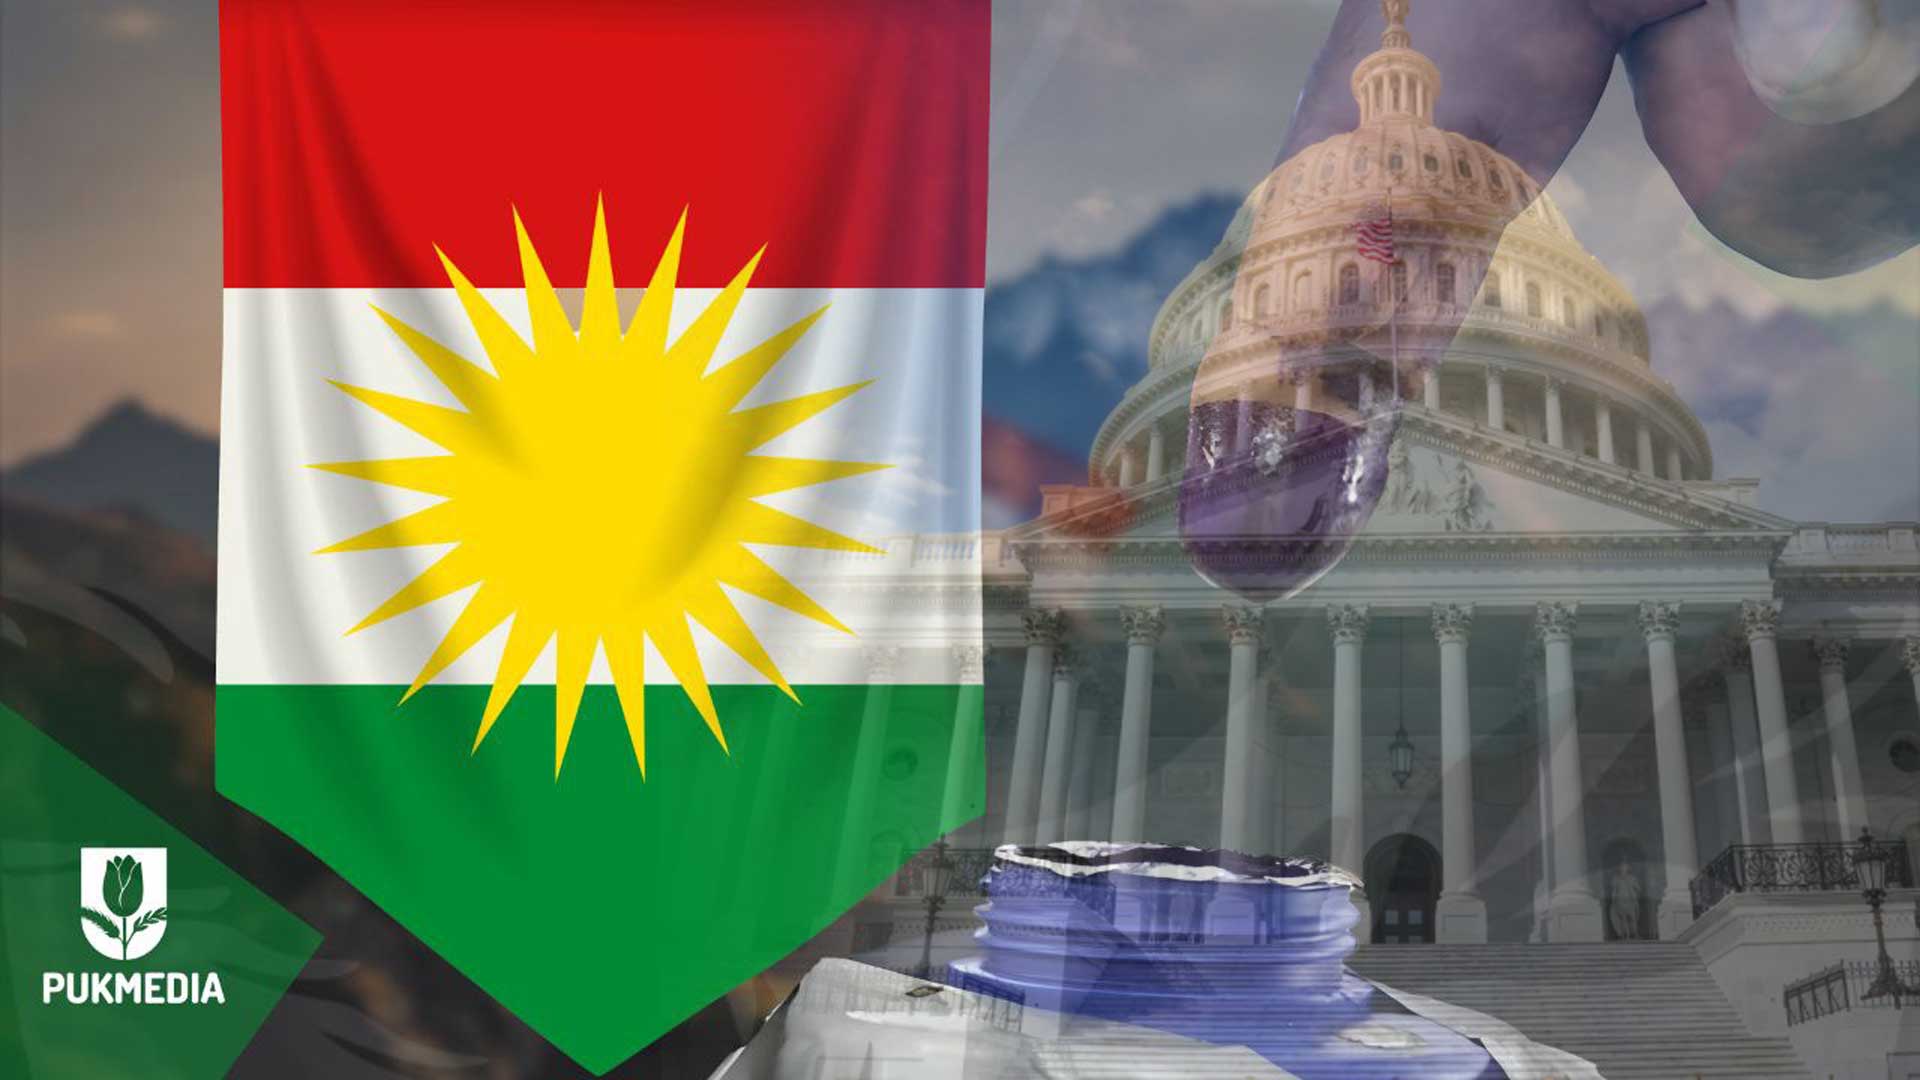 Kurdistan flag & White House 